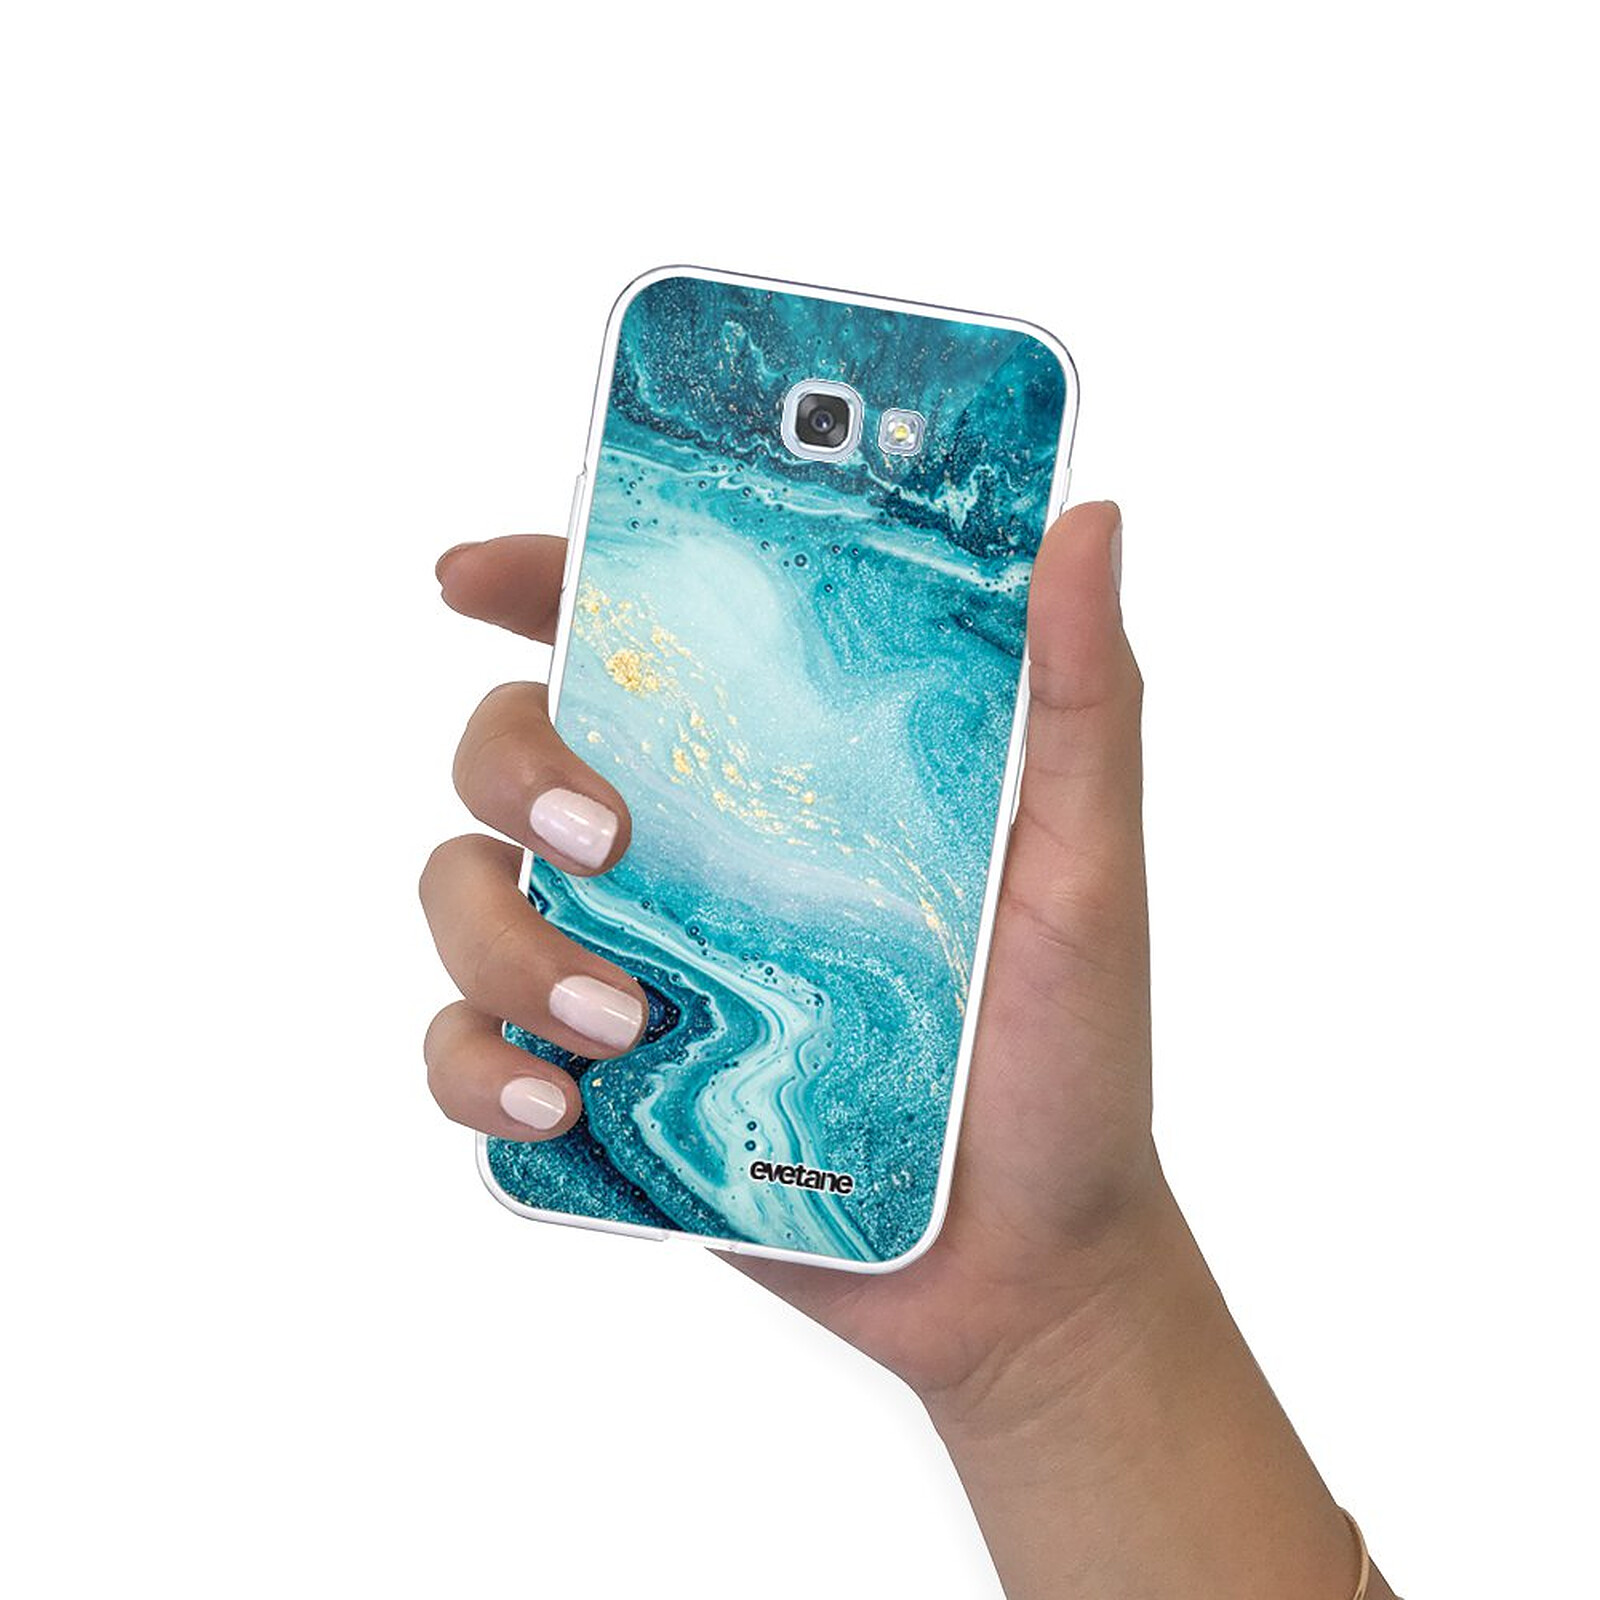 yoowei® Coque Galaxy A5 2017 3 en 1 Haute Qualité Ultra Fine Pleine Protection PC Shell dur dos Étui pour Samsung Galaxy A5 2017 Smartphone Étui Samsung Galaxy A5 2017 